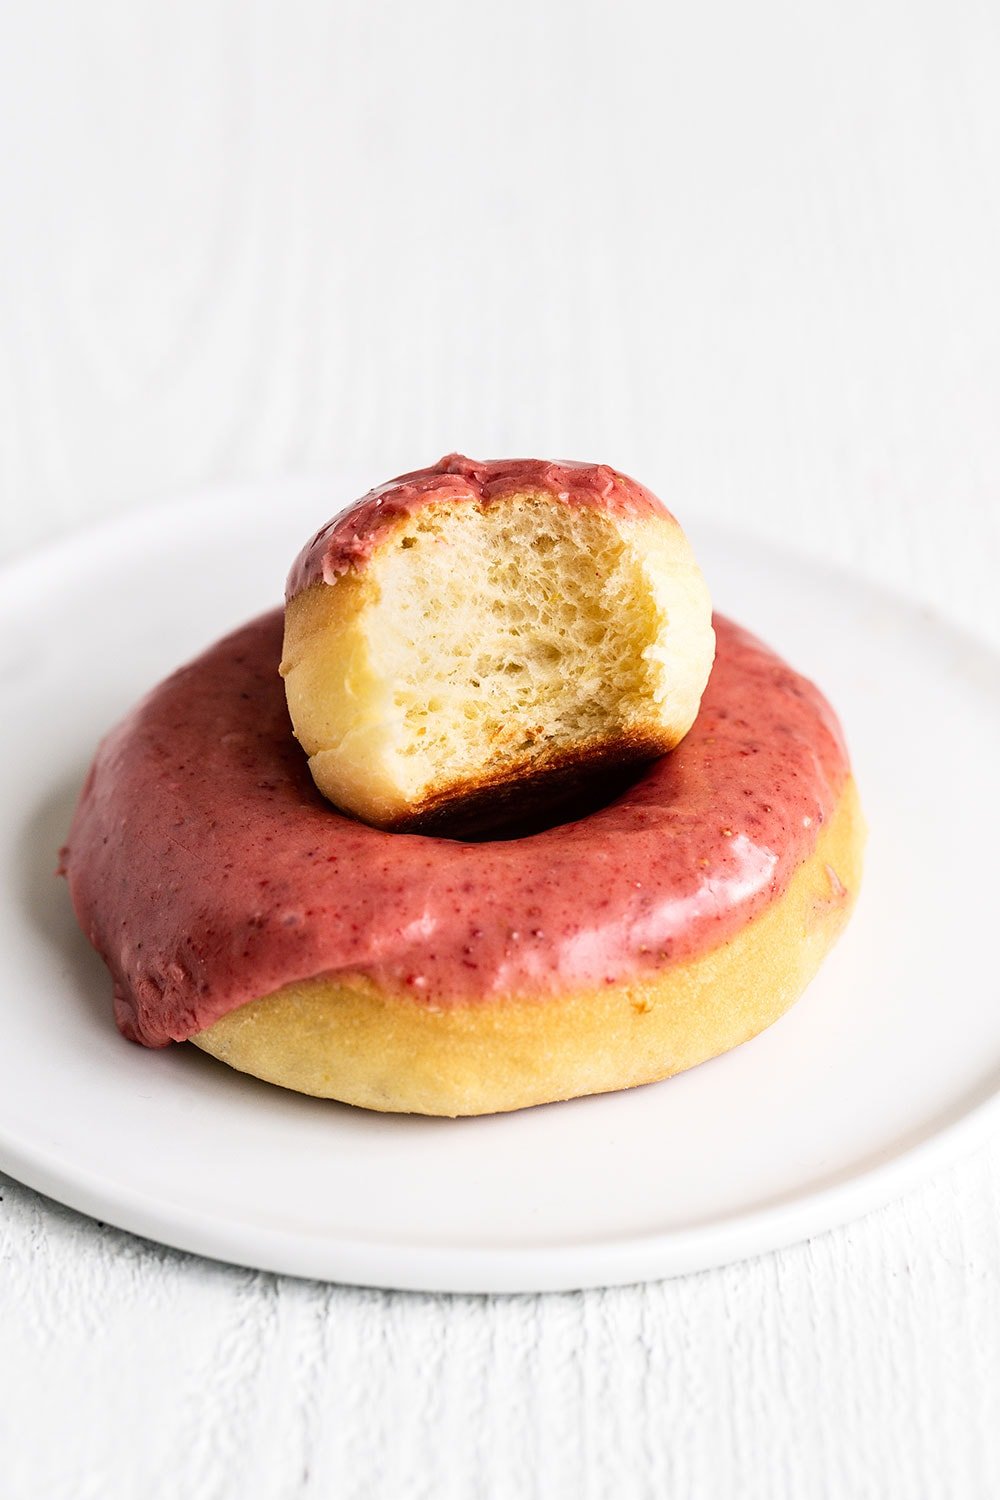 Doughnut on a plate with a half eaten doughnut hole - a terrific summer dessert recipe